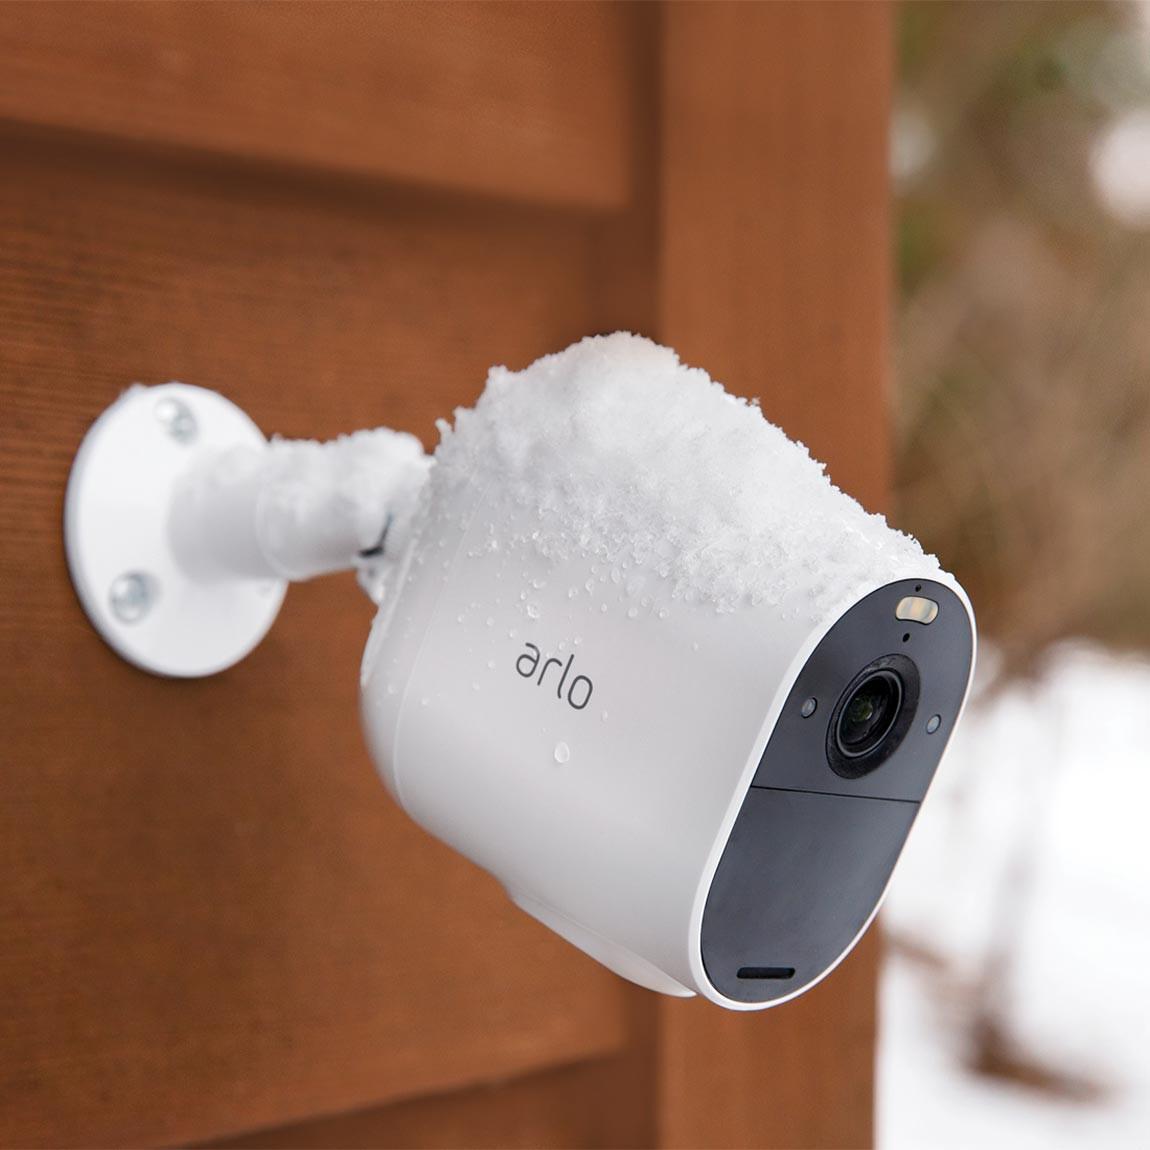 Arlo Essential Spotligt-Kamera wetterfest auch bei Schnee